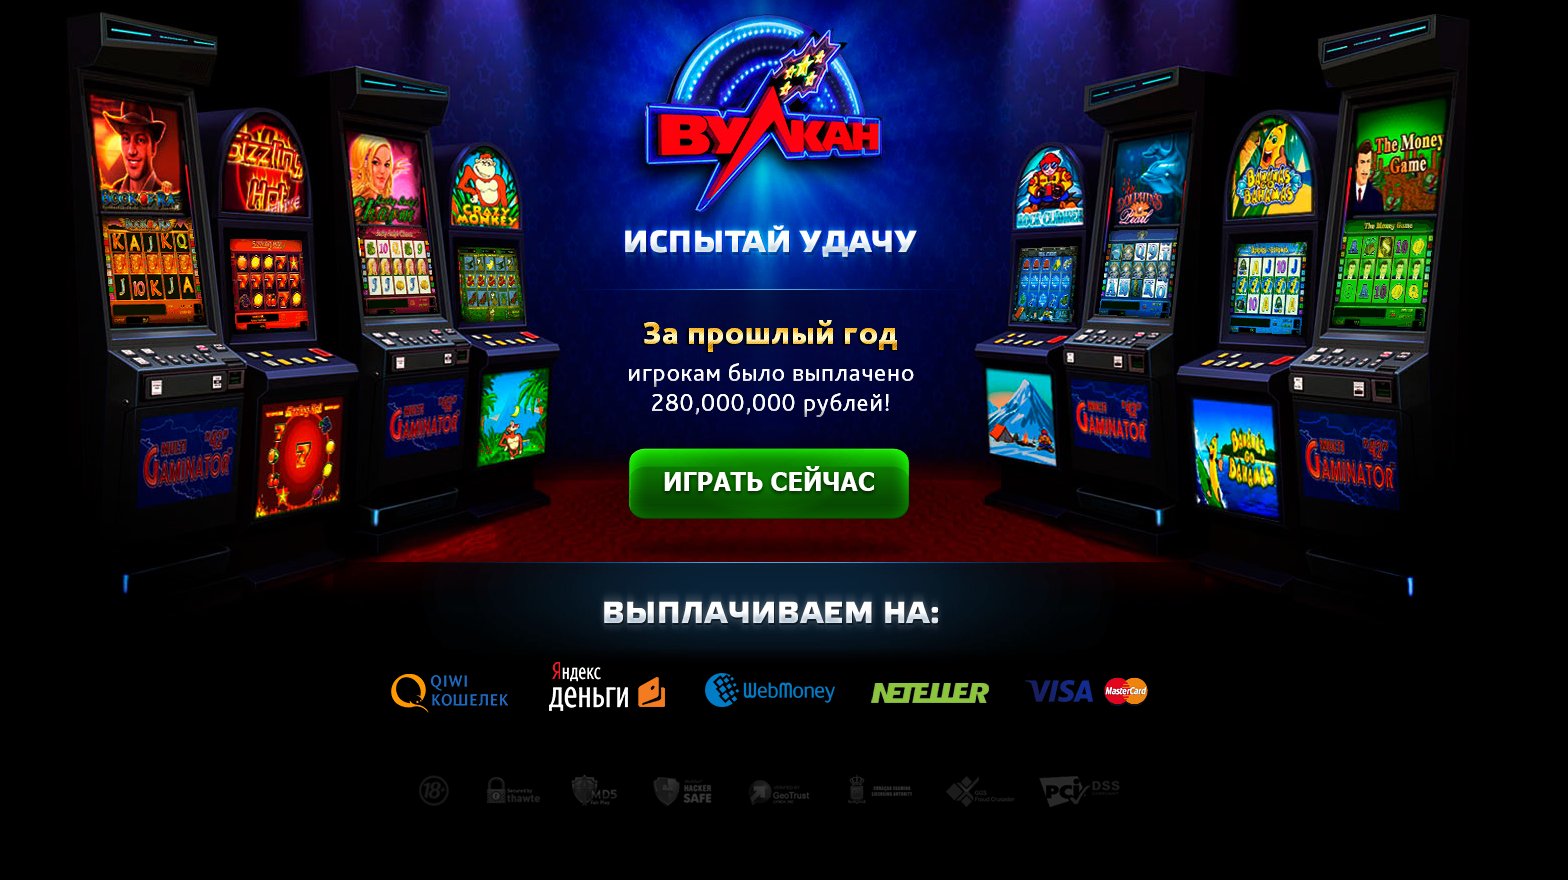 Вулкан россия игровые автоматы онлайн клуб вулкан казино секс онлайн видео в рулетке